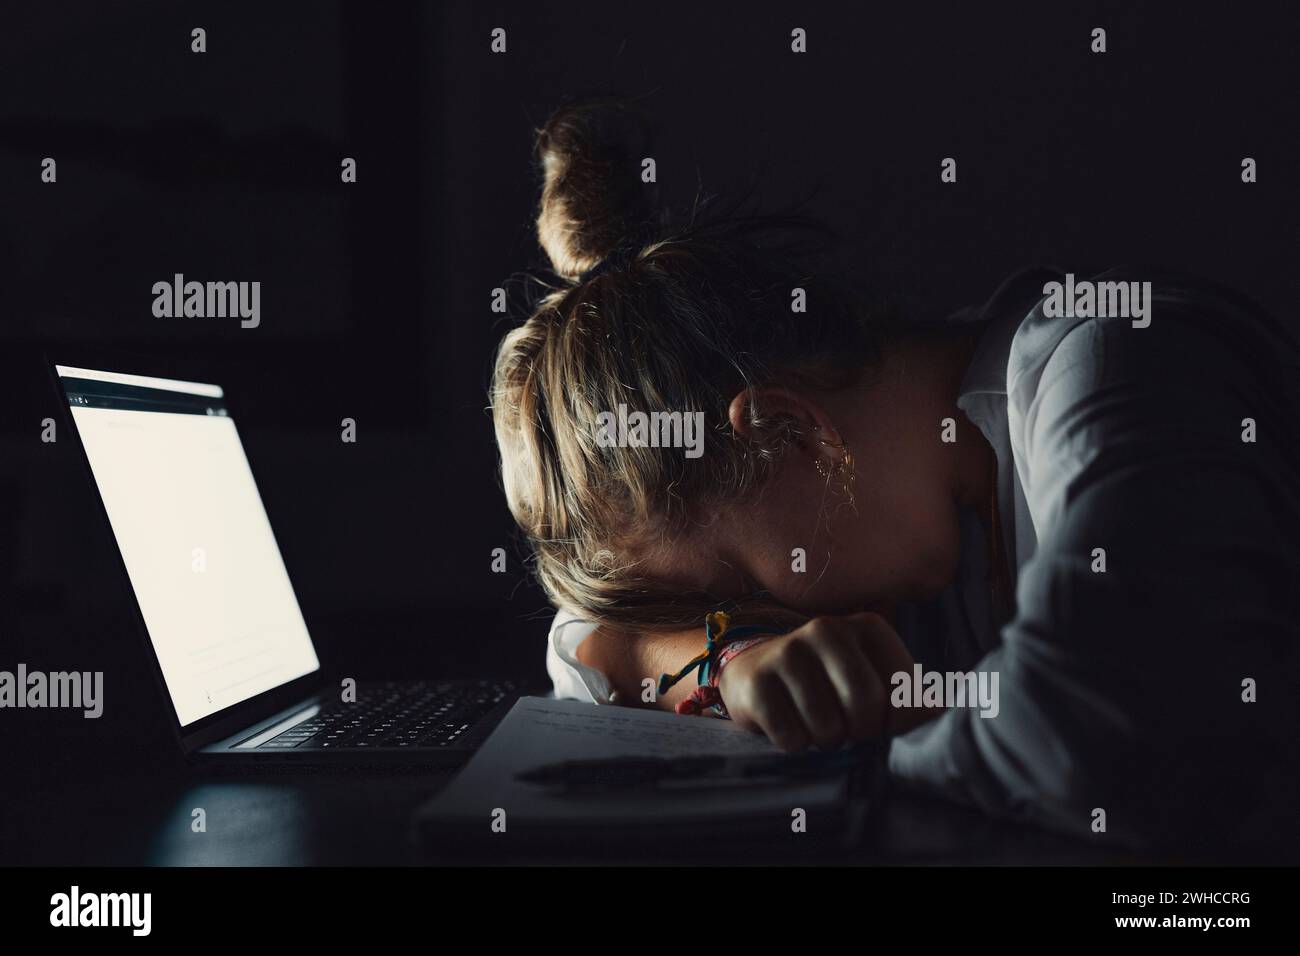 Stanca teenager studentessa universitaria caucasica si addormenta esausta dopo un difficile esame di apprendimento, giovane donna priva di pietà che dorme seduto alla scrivania sente la fatica di doversi annoiato dal concetto di studio Foto Stock